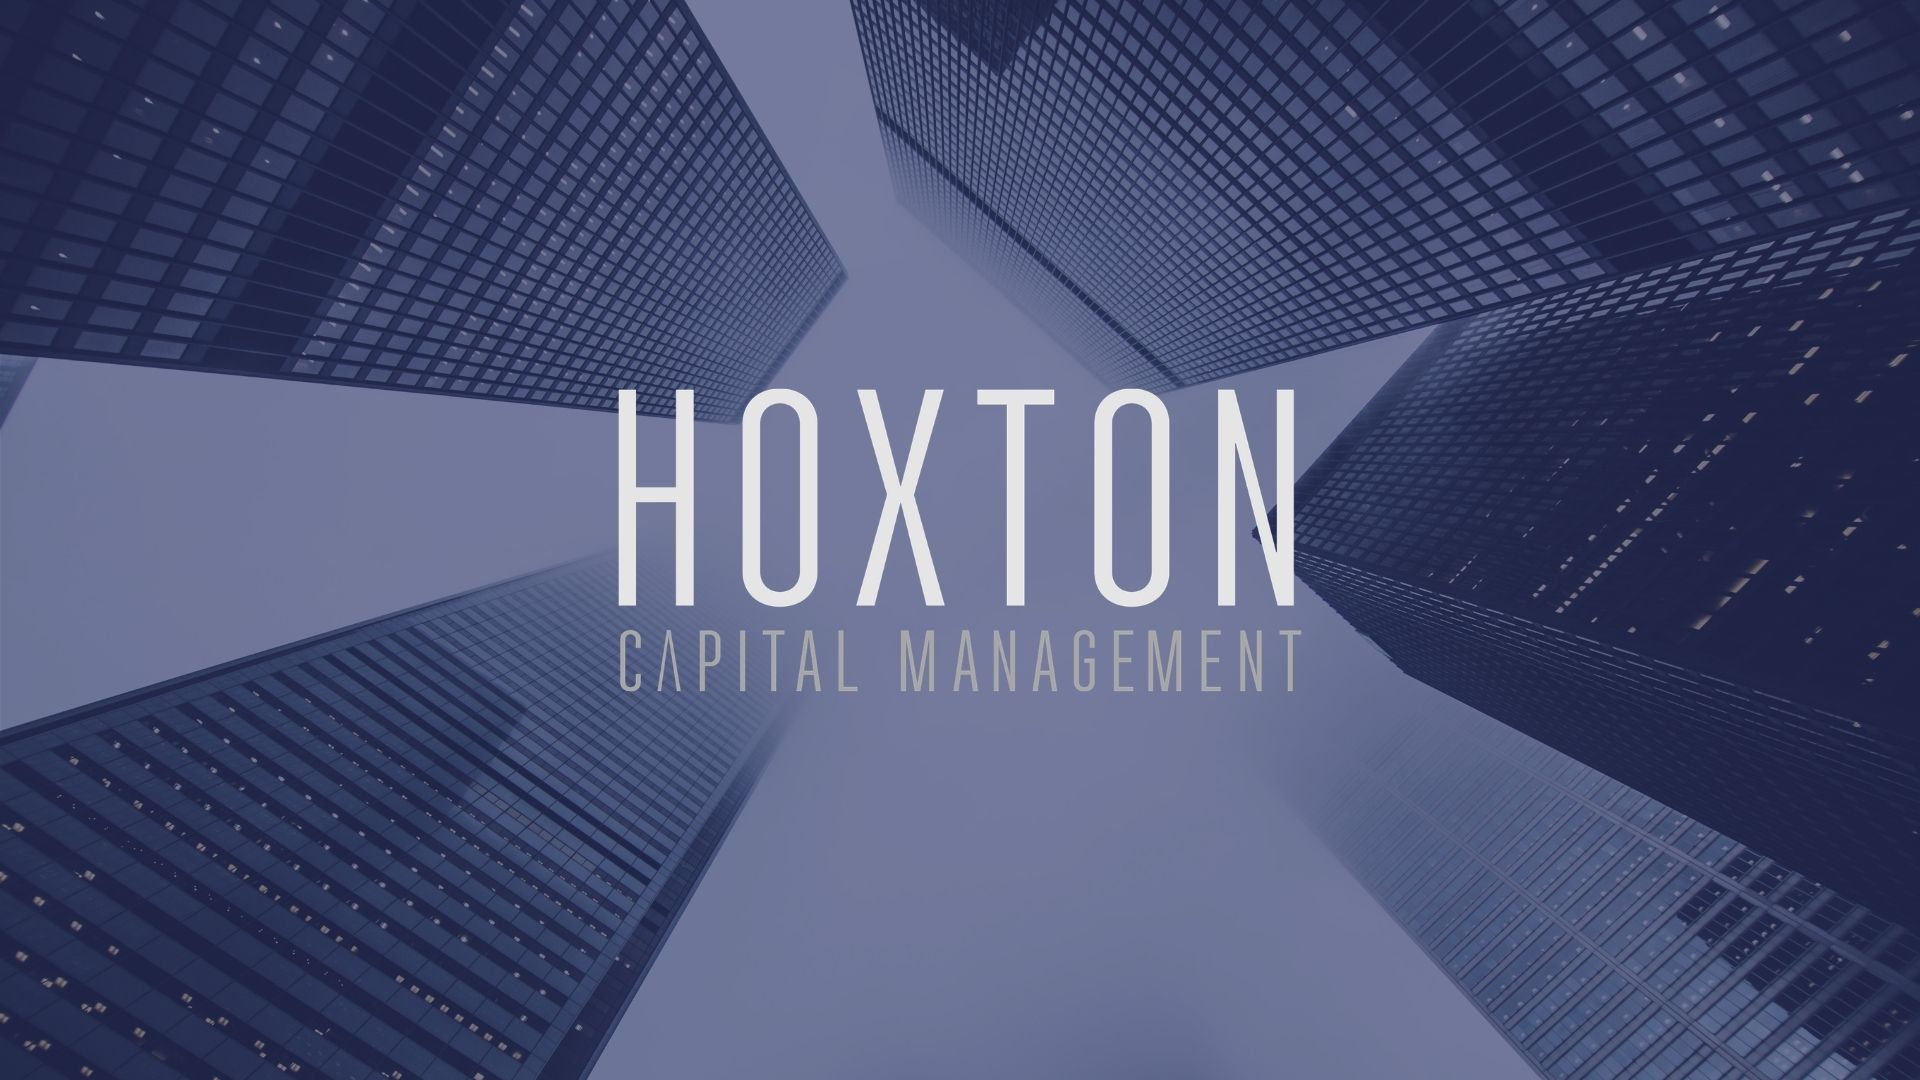 Hoxton Capital Management surpasses GBP 500 million (USD 691 million) in assets under management 